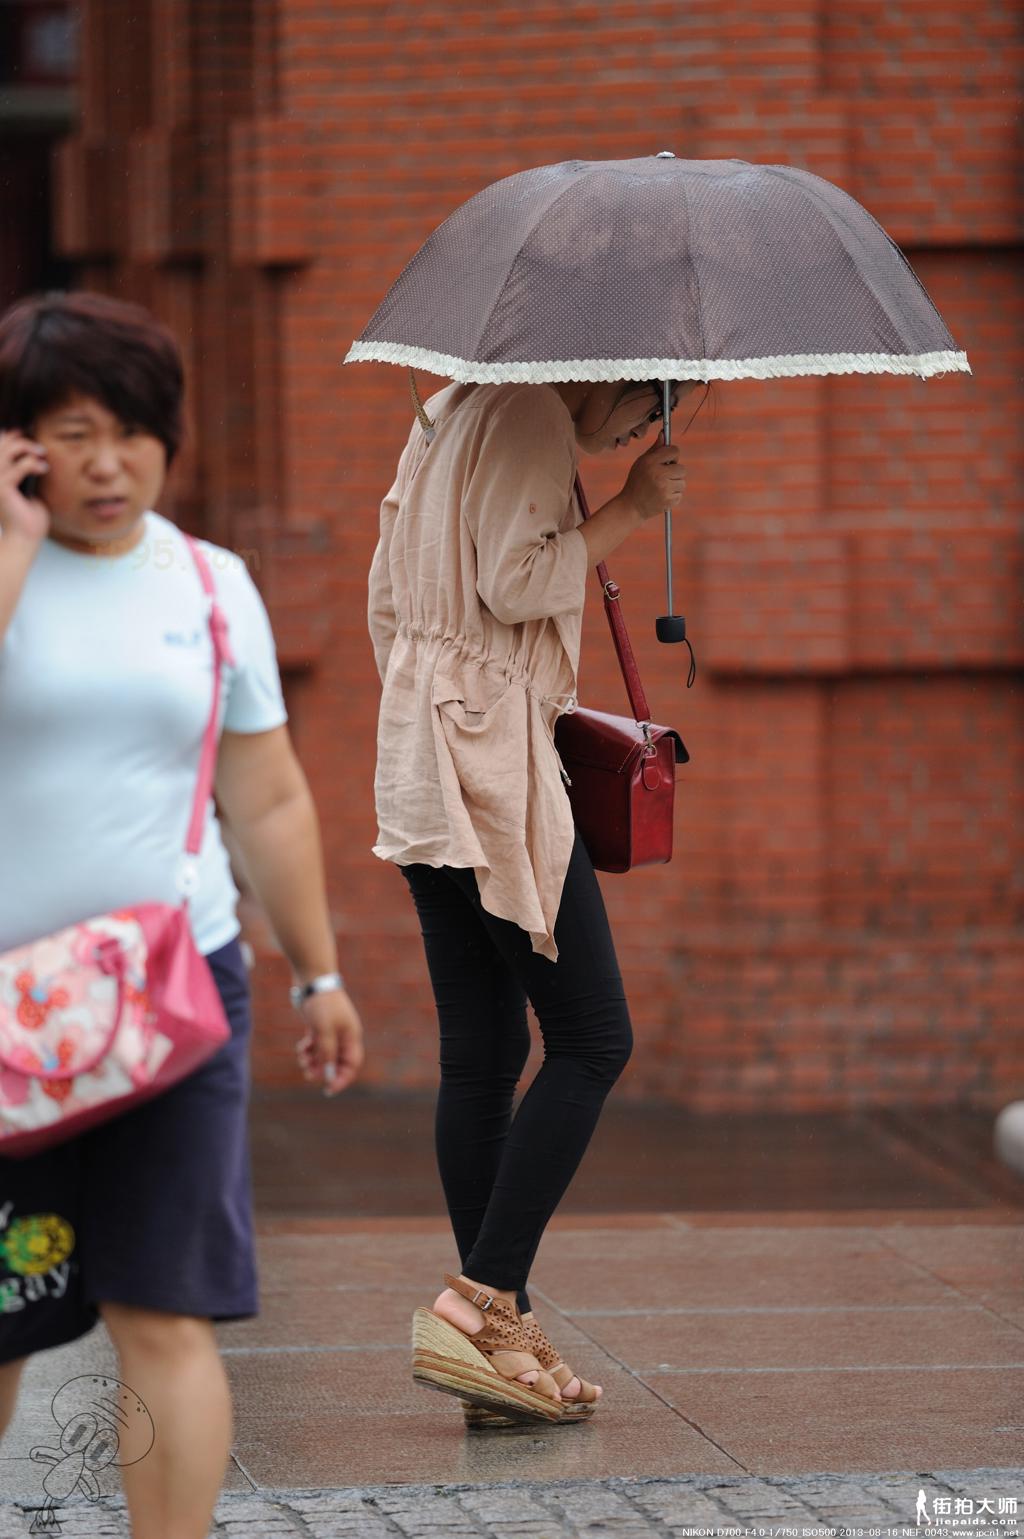 [街拍美女]雨伞黑裤-7张